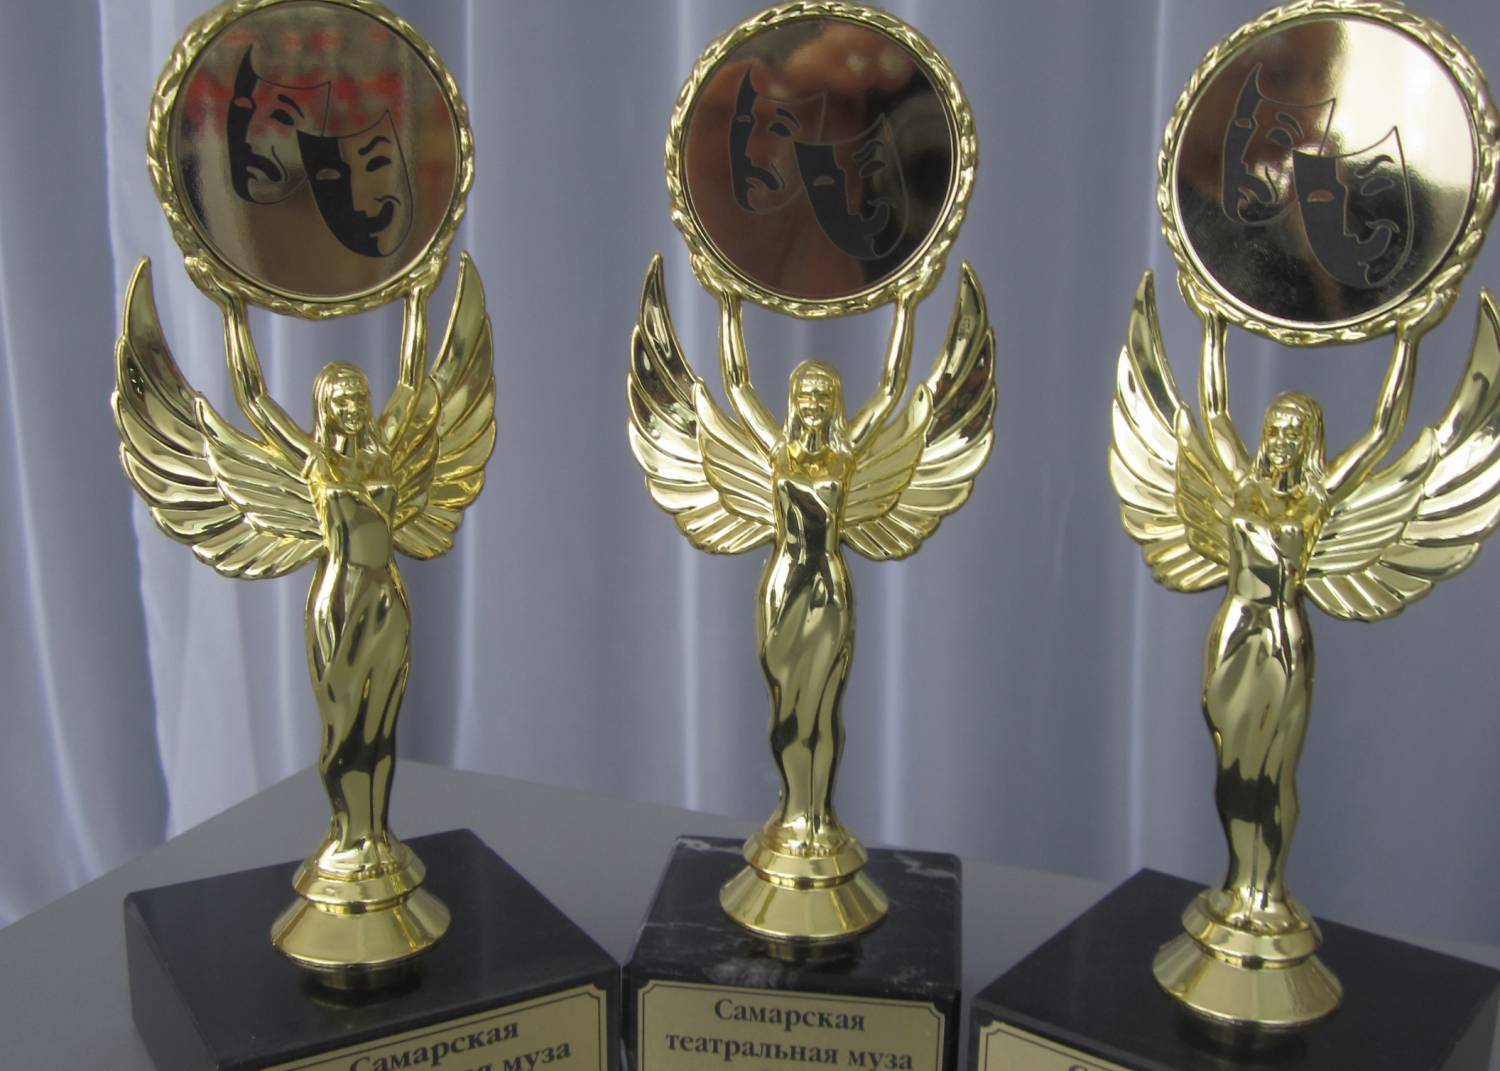 ТЮЗ "Дилижанс" одержал победу сразу в трёх номинациях “Самарской театральной музы - 2013”